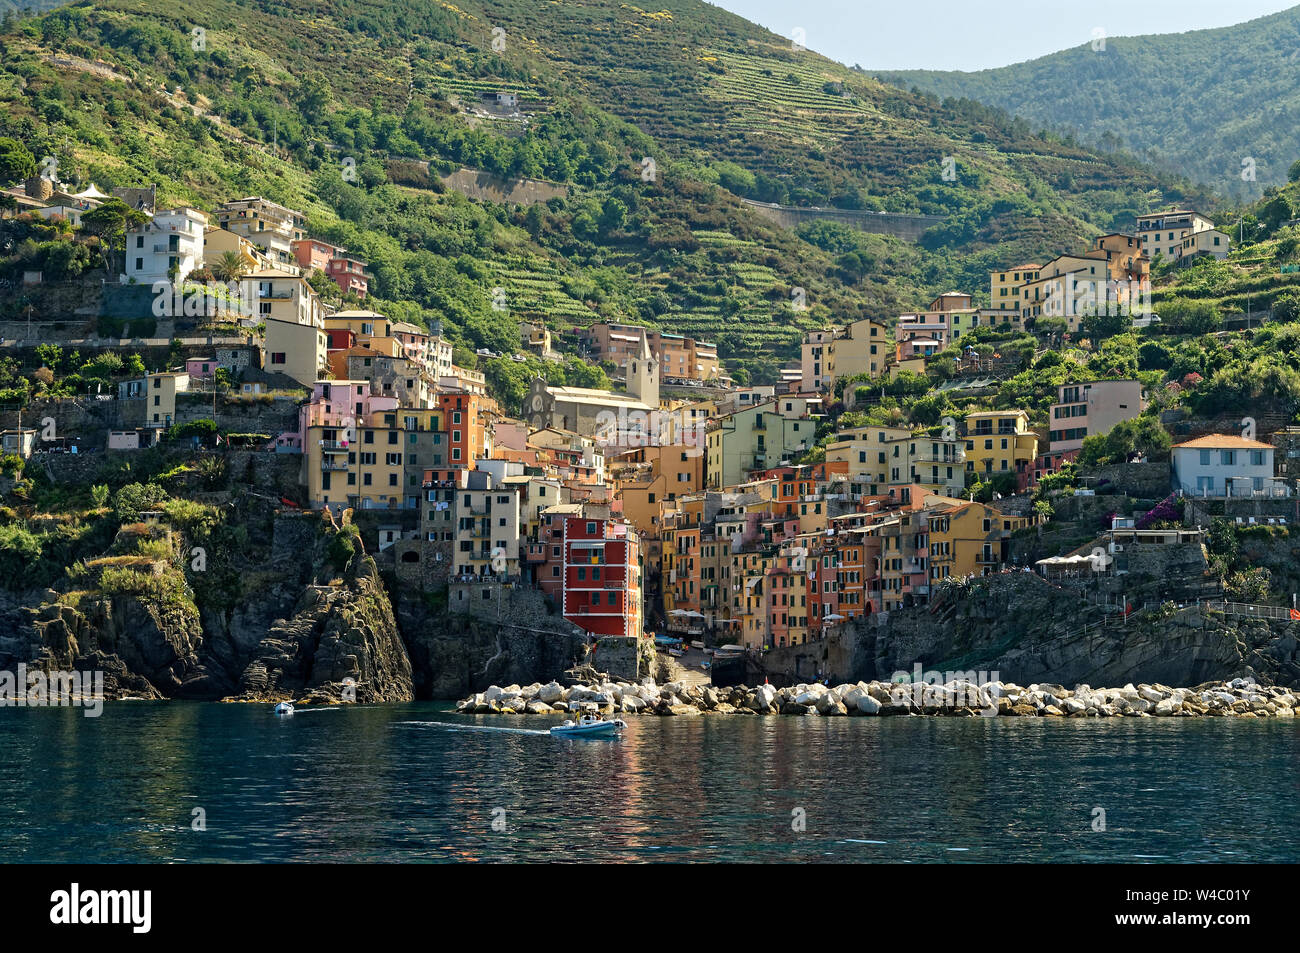 Riomaggiore Dorf in Cinque Terre, Italienische Riviera. Blick vom Meer. Stockfoto